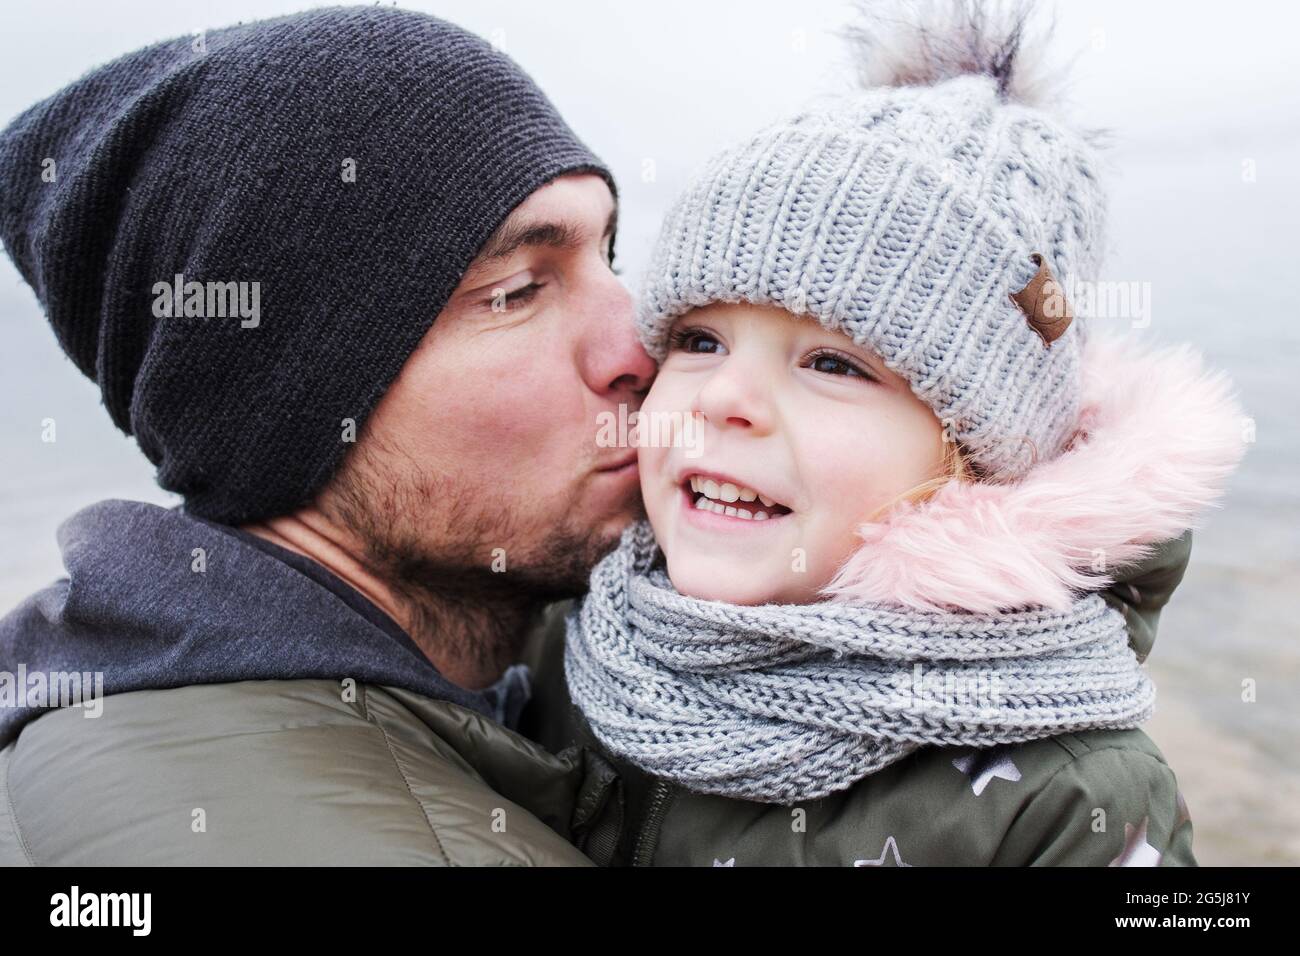 Vater küsst seine kleine Tochter und sie freuen sich über ihre Beziehung - Vater und Tochter haben Spaß zusammen - Single Papa kümmert sich um seine kleine da Stockfoto